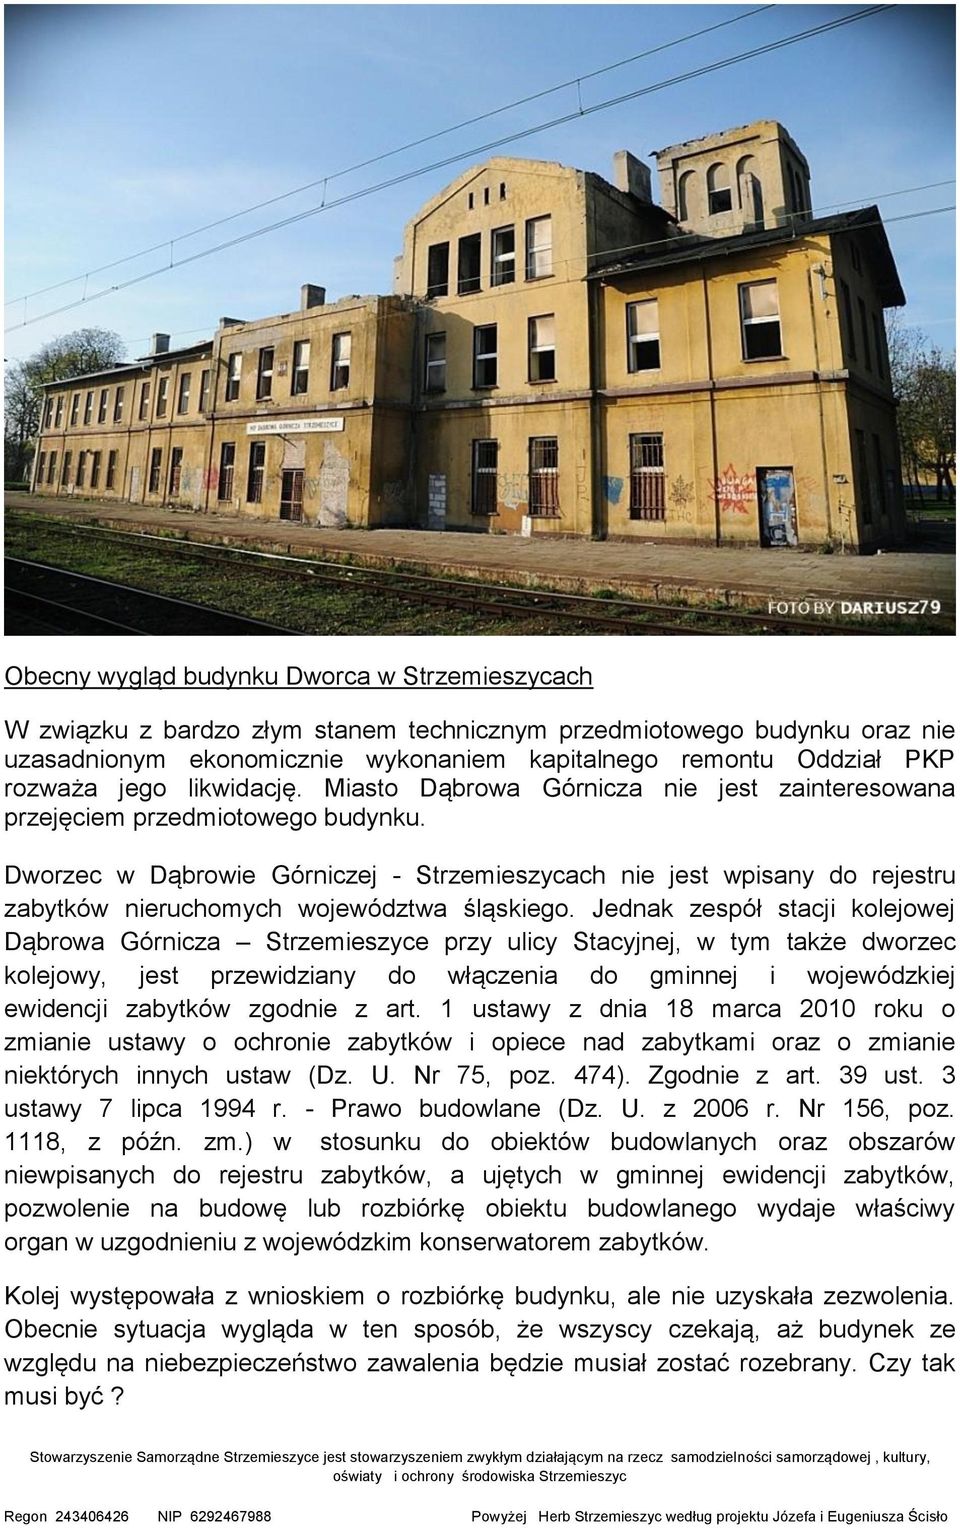 Dworzec w Dąbrowie Górniczej - Strzemieszycach nie jest wpisany do rejestru zabytków nieruchomych województwa śląskiego.